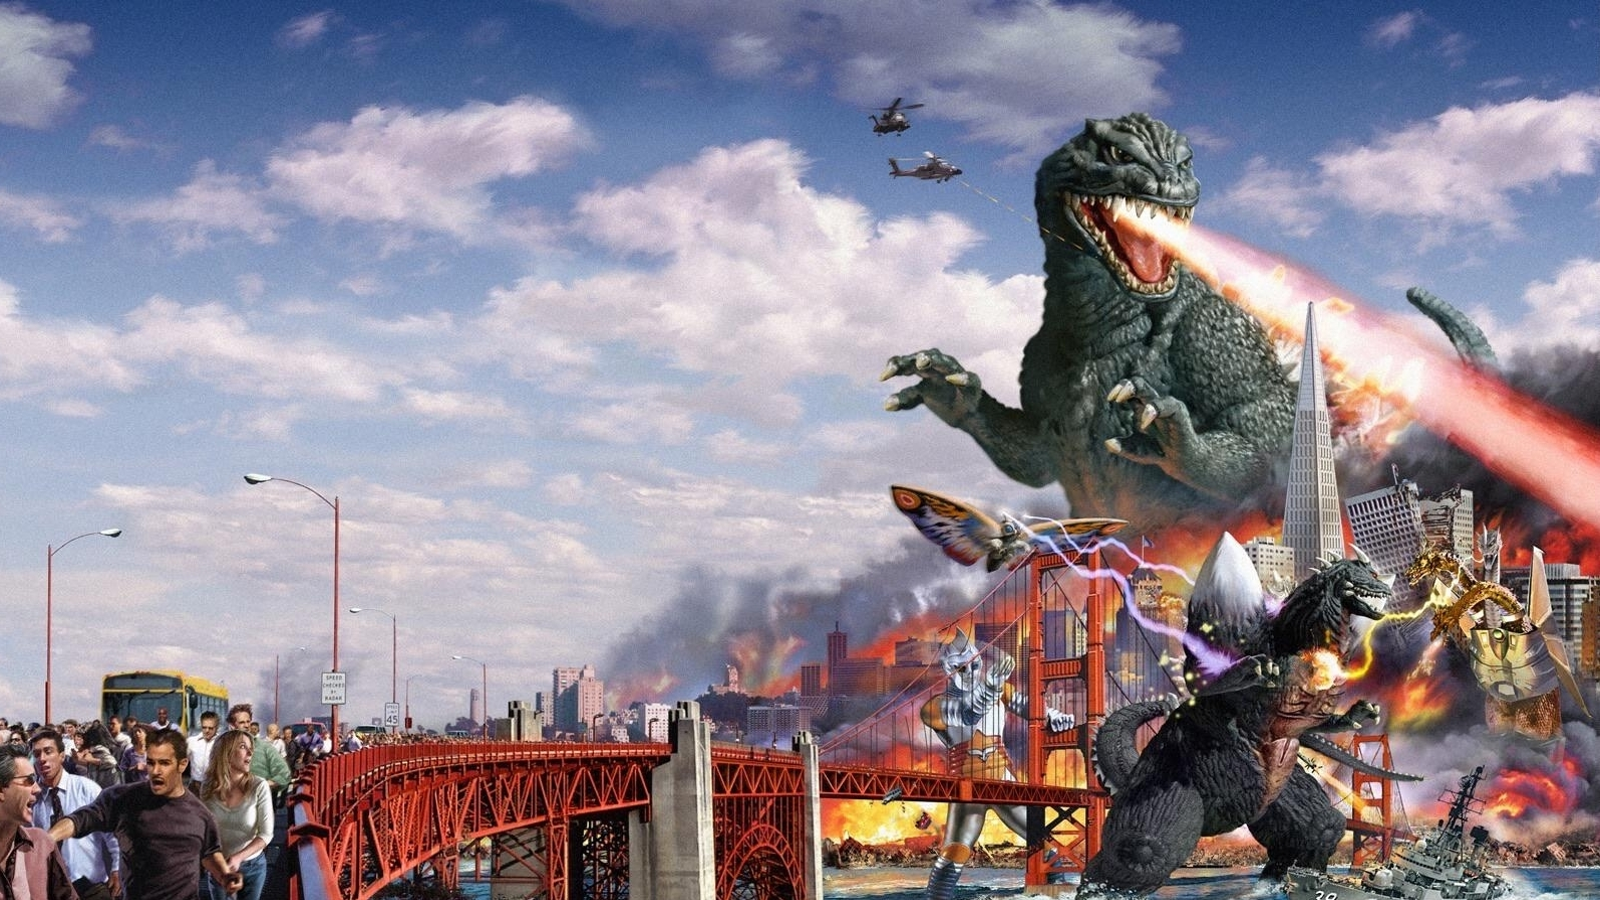 Godzilla Save Earth